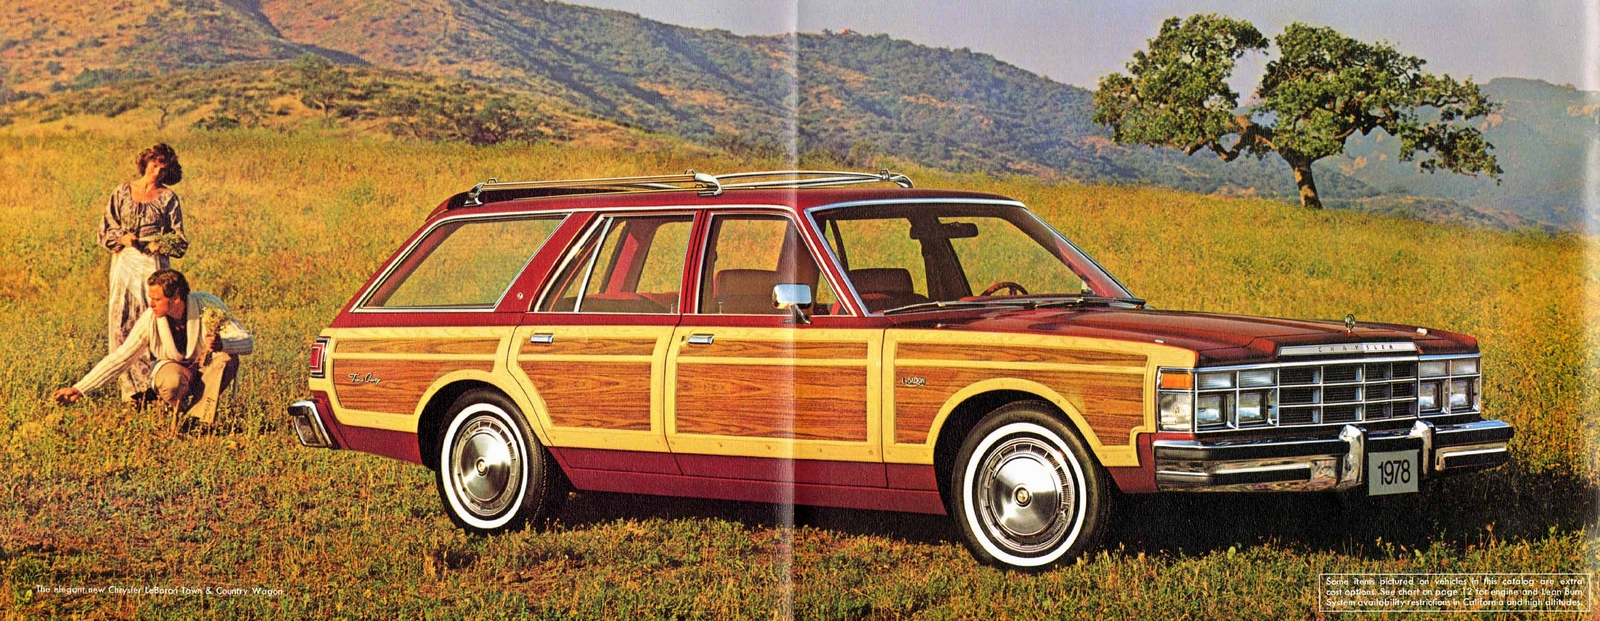 n_1978 Chrysler LeBaron-03-04.jpg